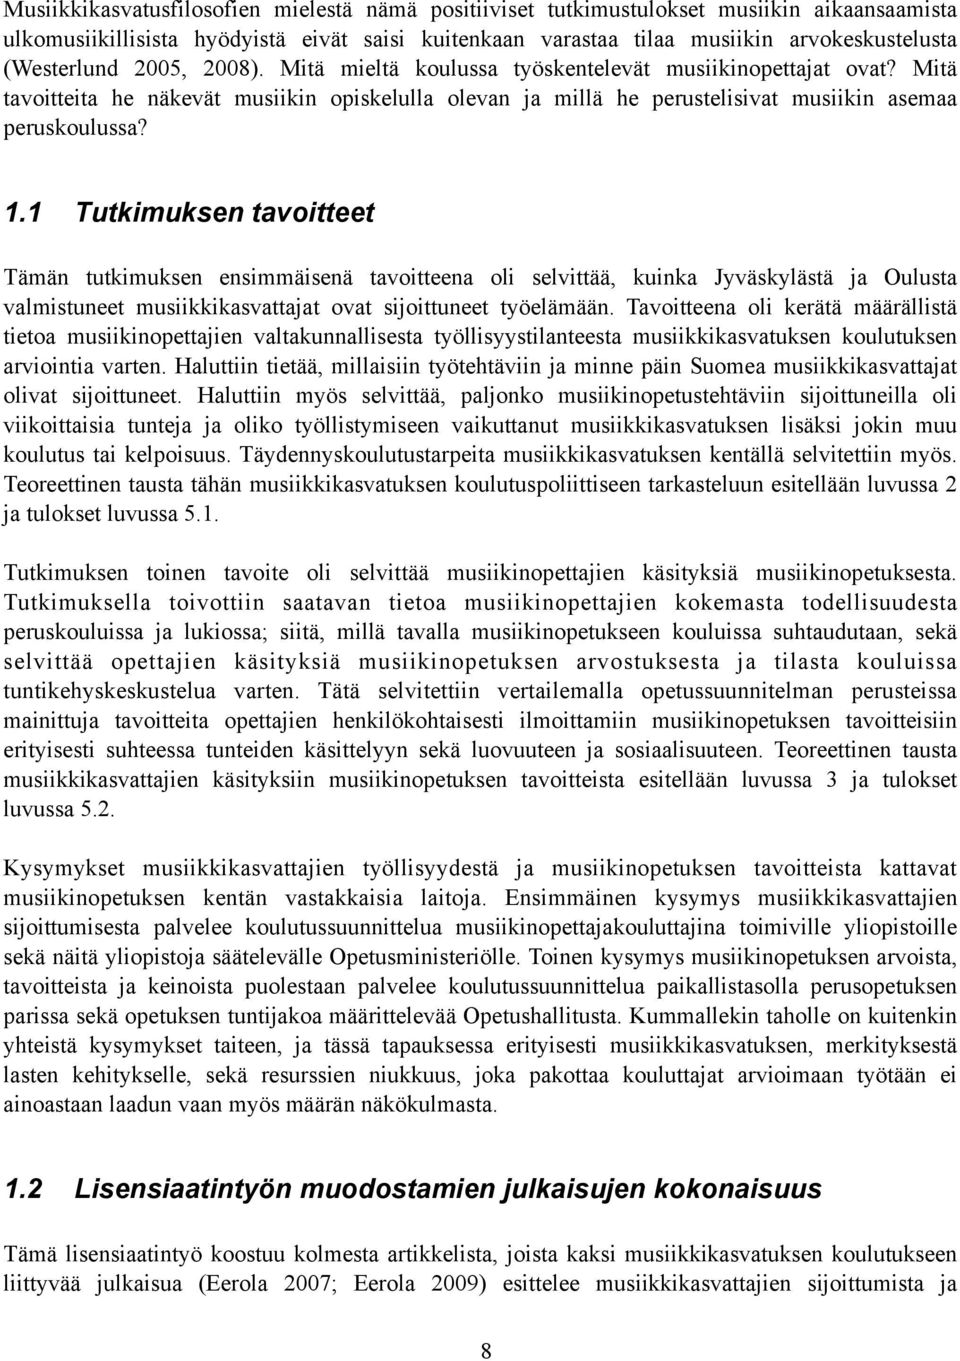 1.1 Tutkimuksen tavoitteet Tämän tutkimuksen ensimmäisenä tavoitteena oli selvittää, kuinka Jyväskylästä ja Oulusta valmistuneet musiikkikasvattajat ovat sijoittuneet työelämään.